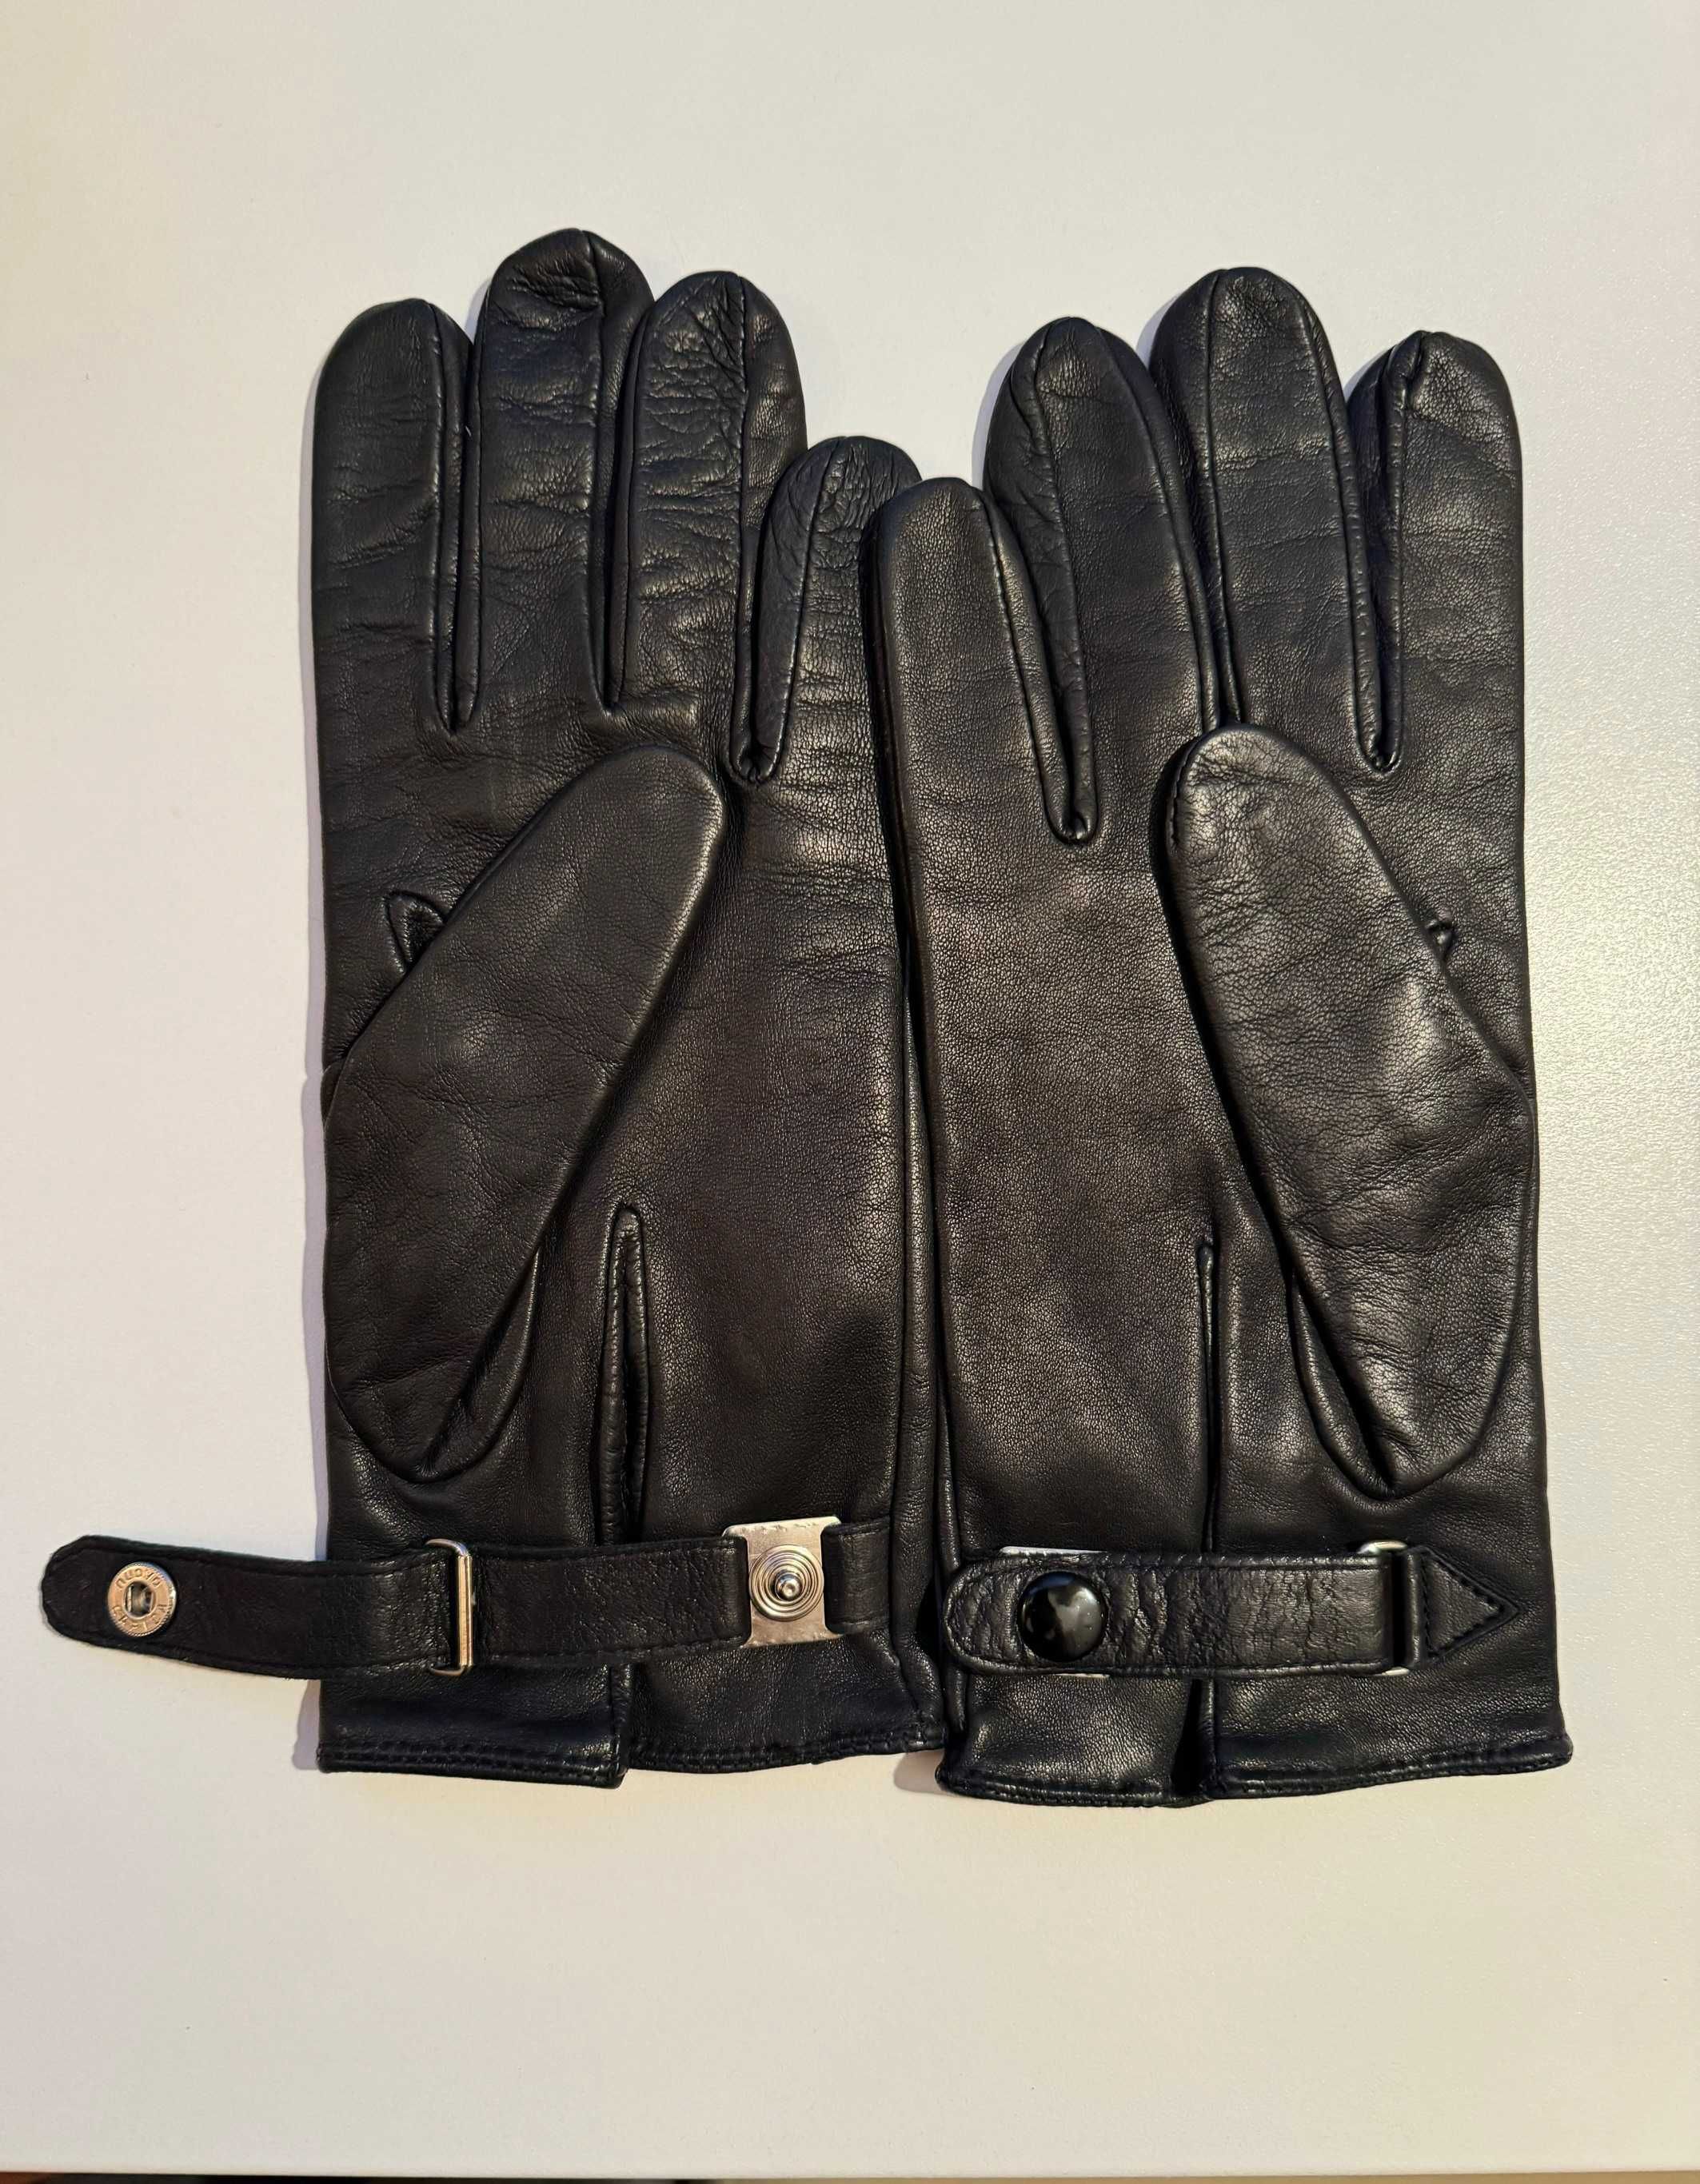 Чоловічі брендовані шкіряні рукавиці Galantex Pirot